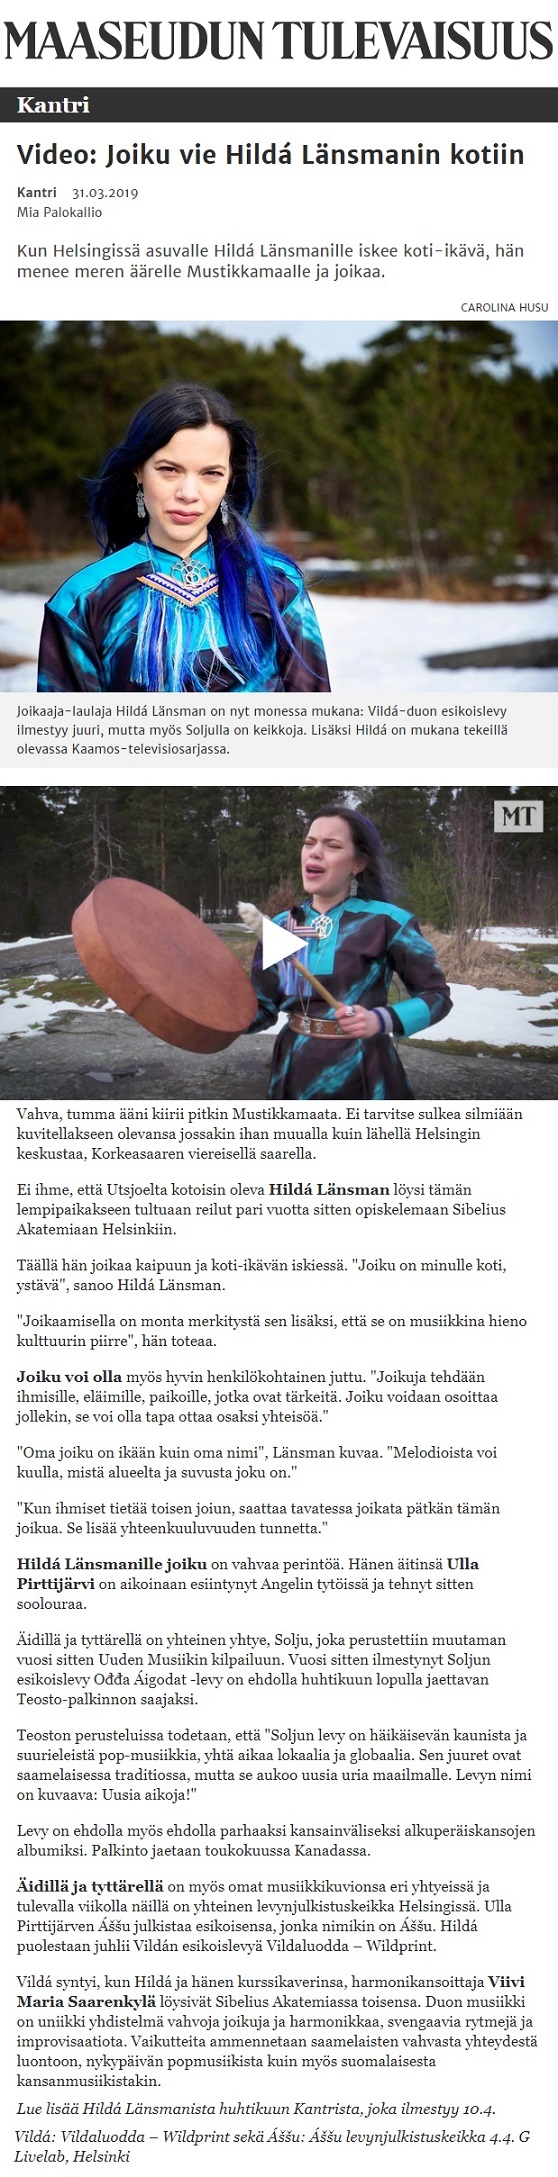 Maaseudun tulevaisuus, Kantri (Finland), 31.3.2019